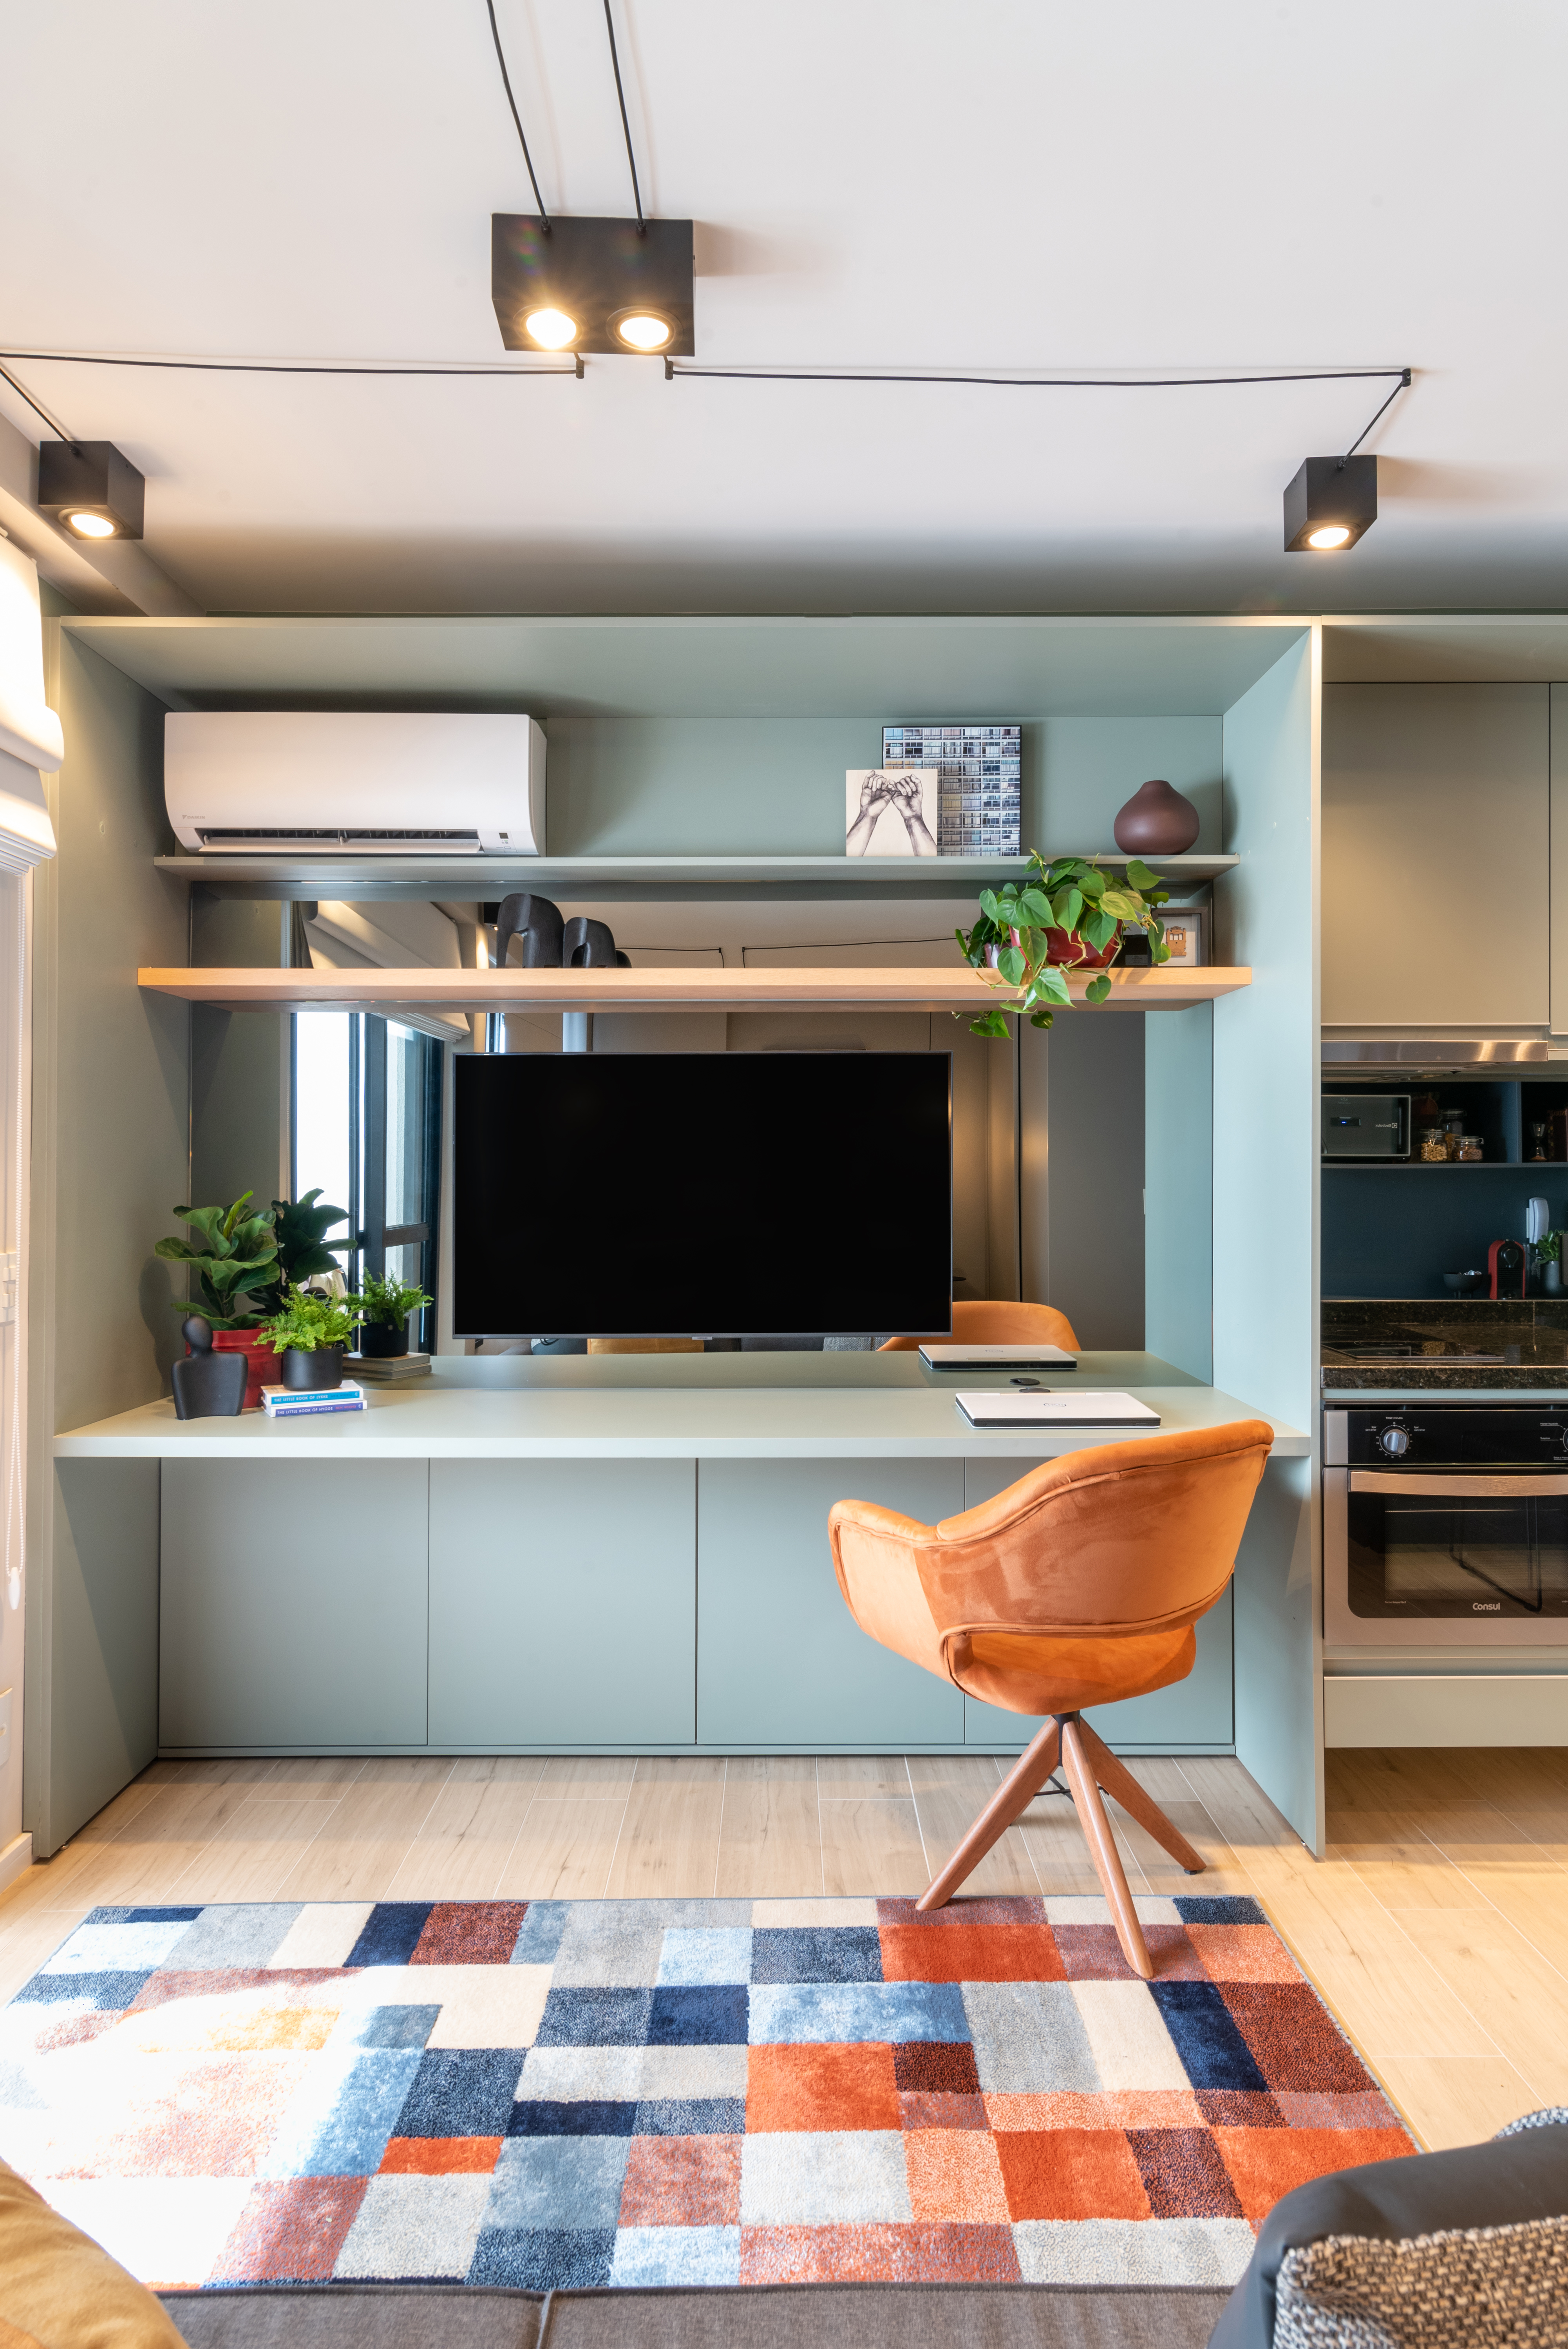 Caixa de marcenaria verde abriga cozinha, bancada e tv em estúdio de 34 m². Projeto de Abrazo Arquitetura. Na foto, bancada, poltrona, ar condicionado, tv, tapete quadriculado colorido.